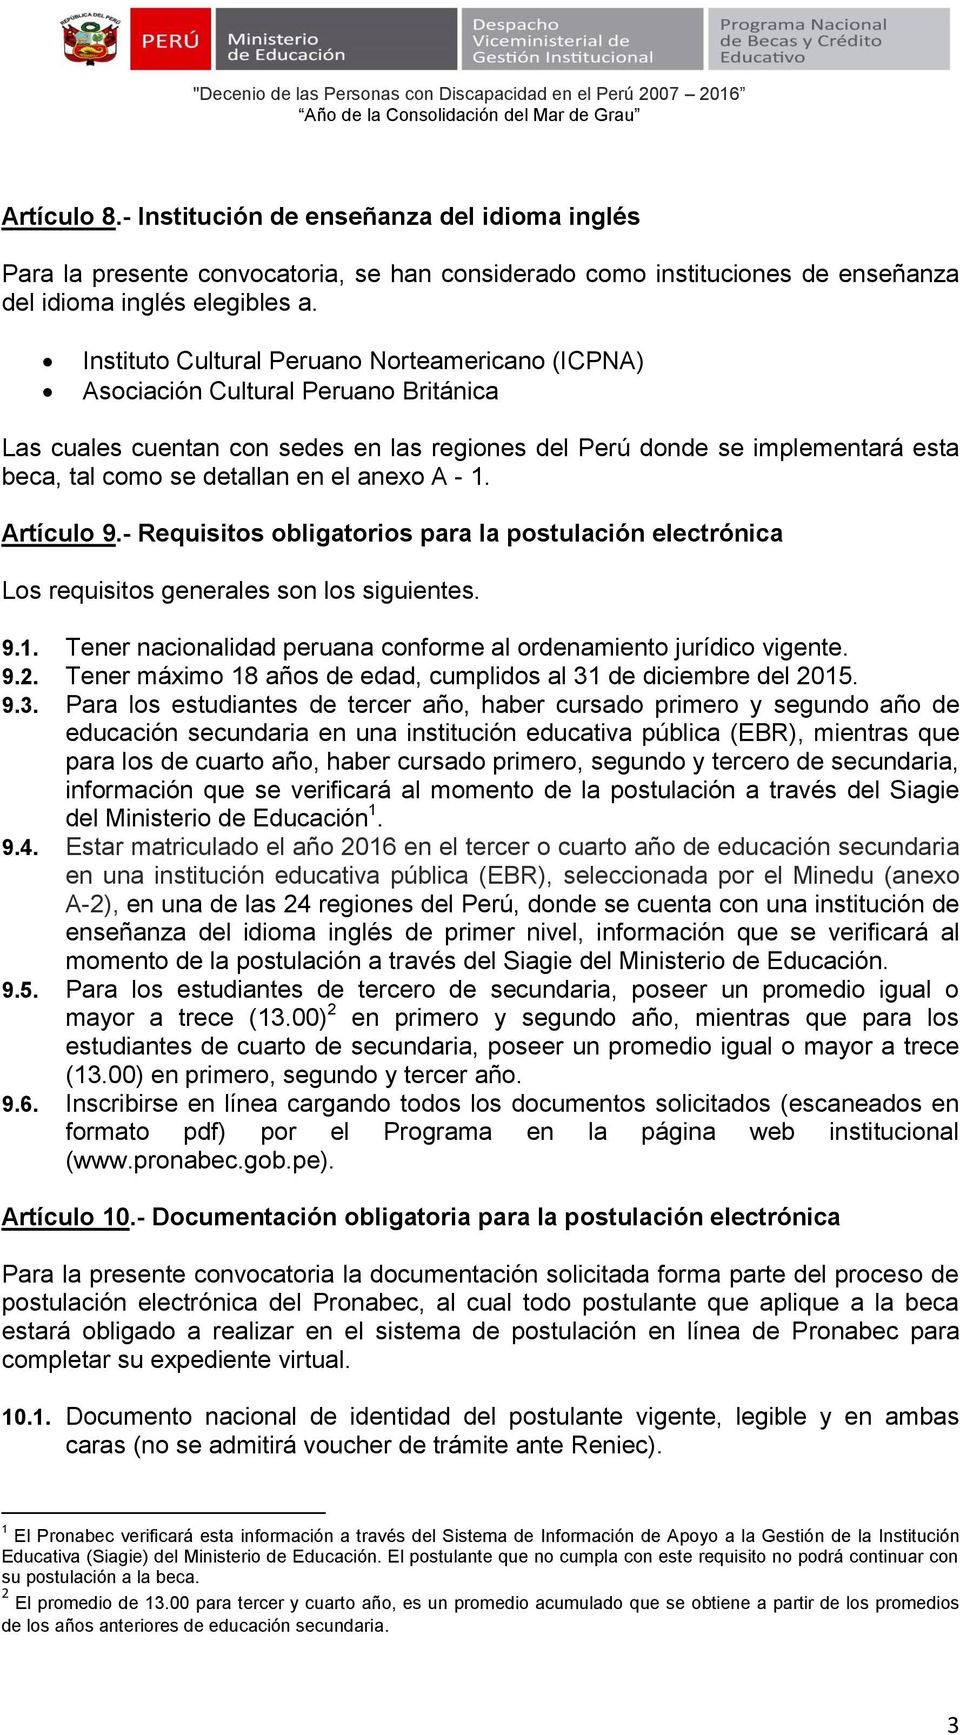 el anexo A - 1. Artículo 9.- Requisitos obligatorios para la postulación electrónica Los requisitos generales son los siguientes. 9.1. Tener nacionalidad peruana conforme al ordenamiento jurídico vigente.